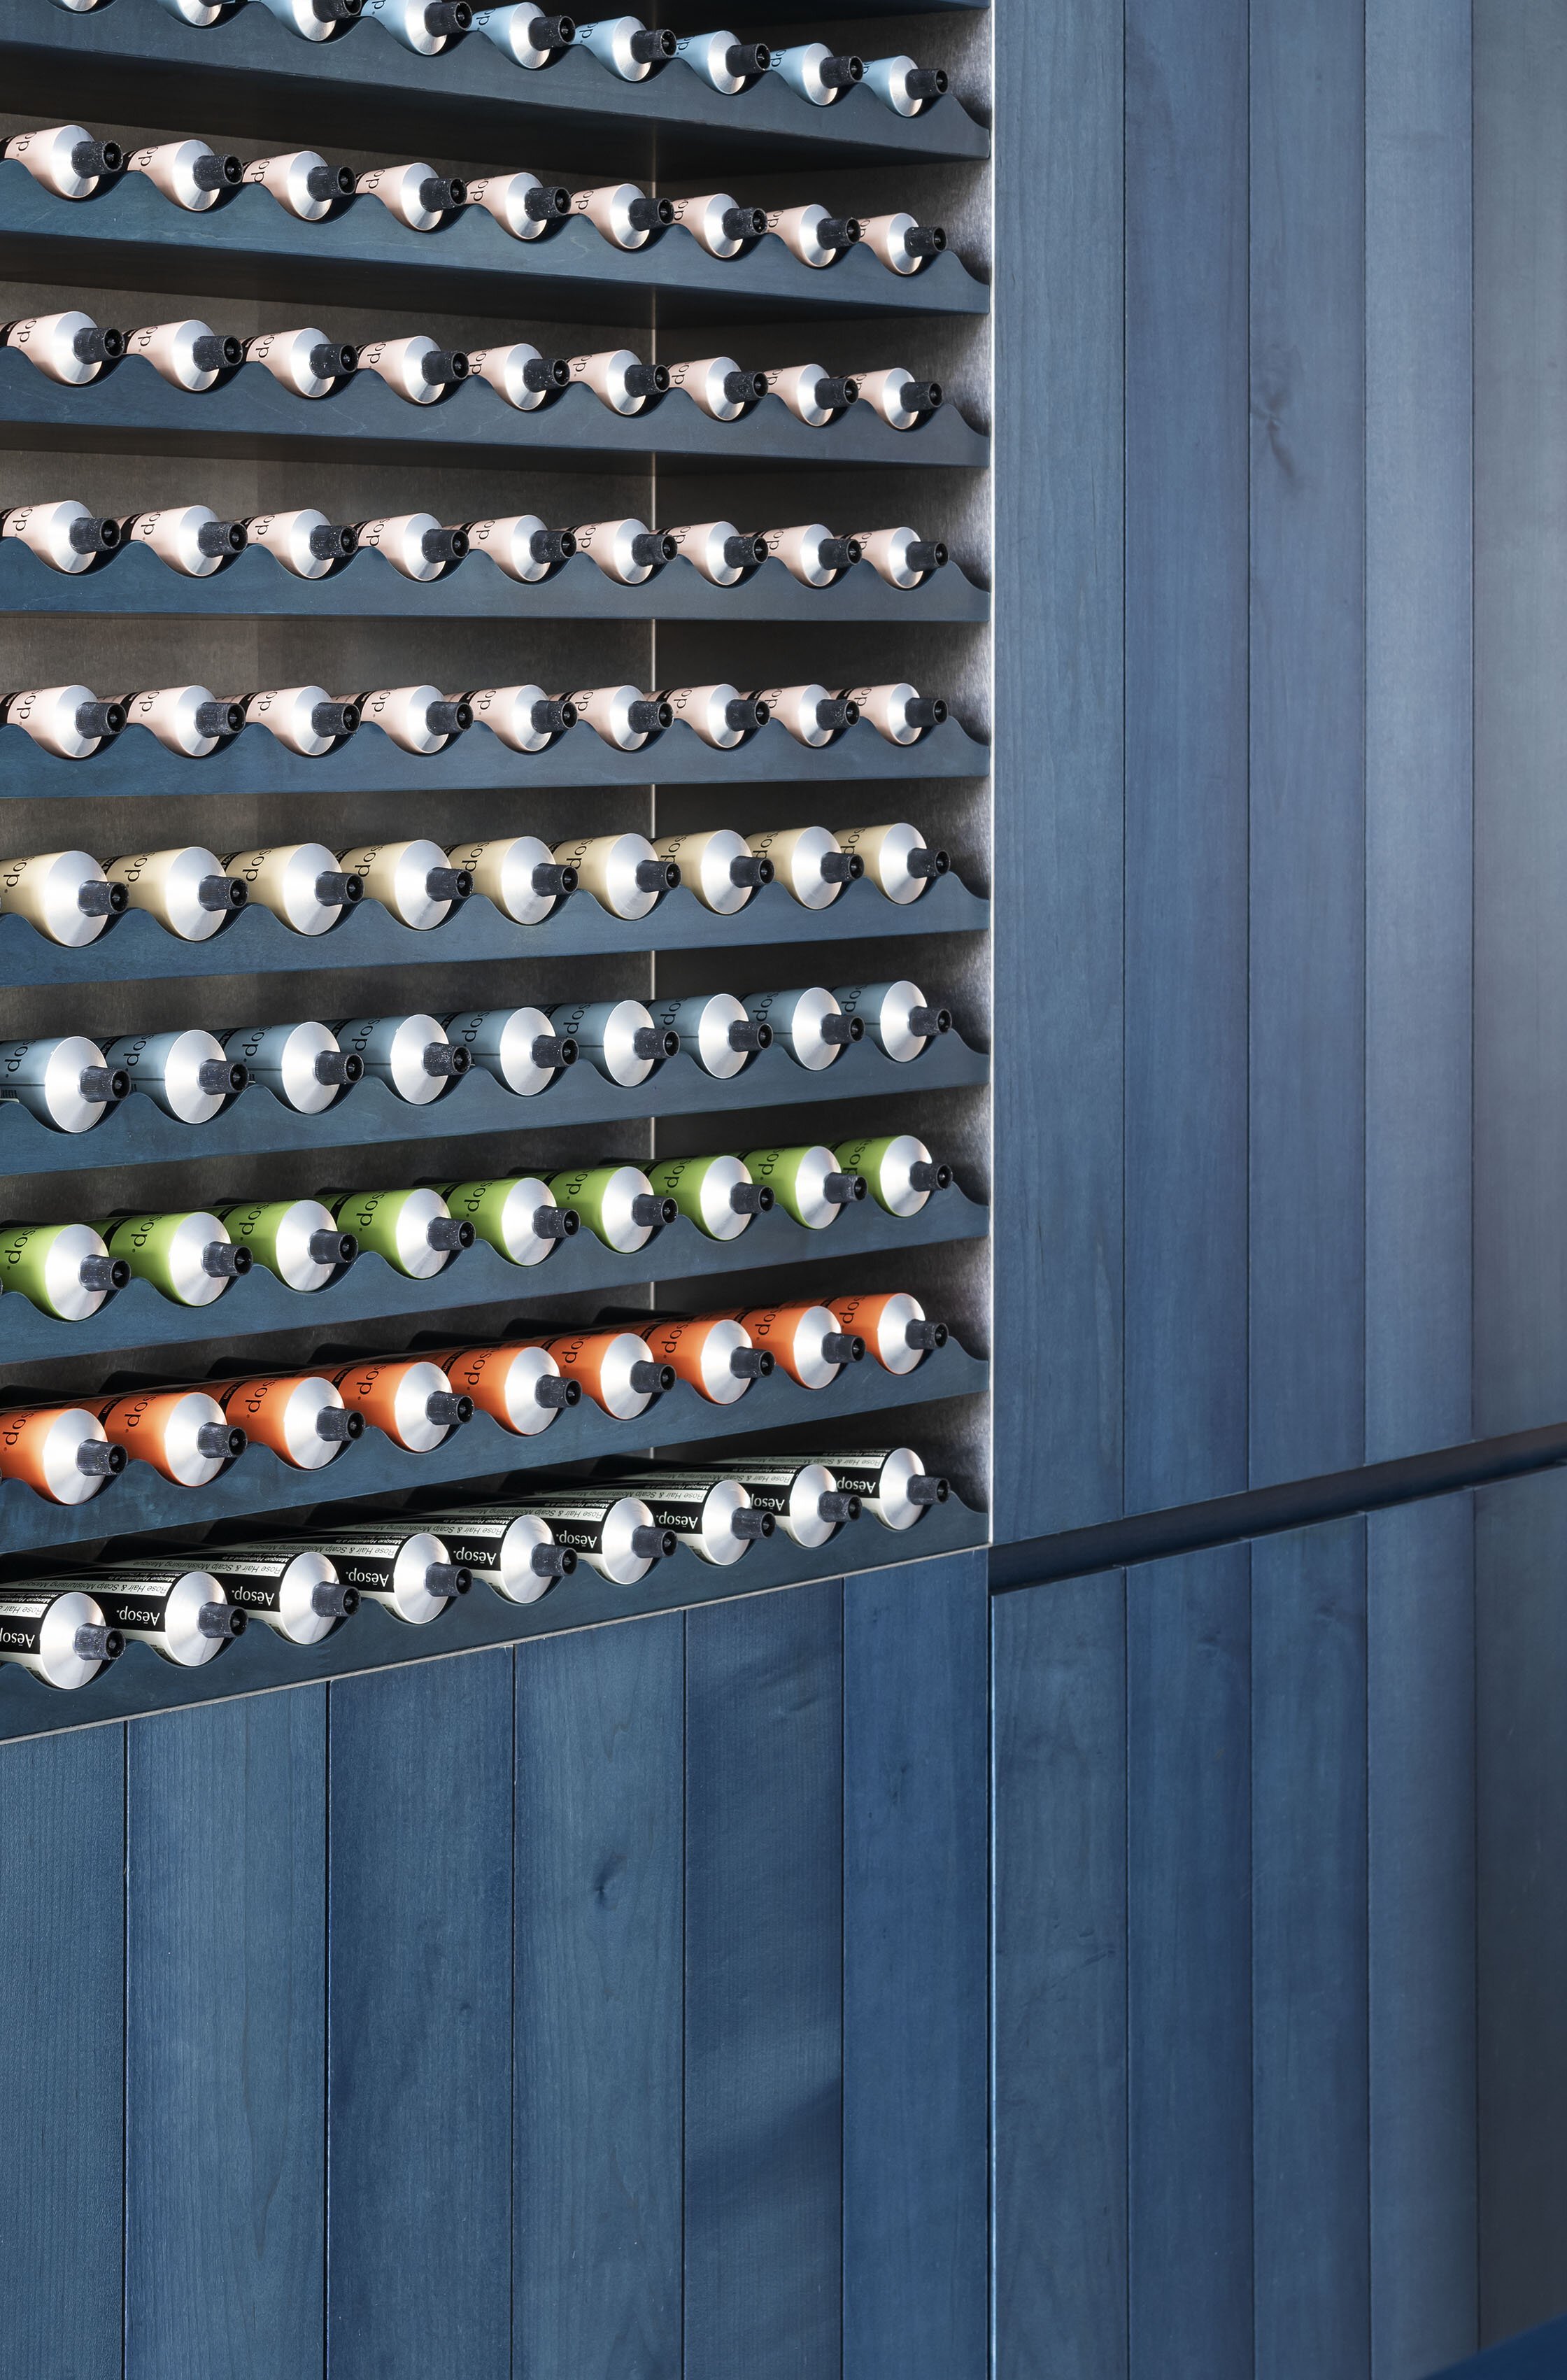  トラフ 建築設計事務所の鈴野浩一と禿真哉がインテリアデザインを手掛けたAesopイソップ ニュウマン横浜店の商品棚のディテール。素材はBUAISOUが藍染したメープル材 